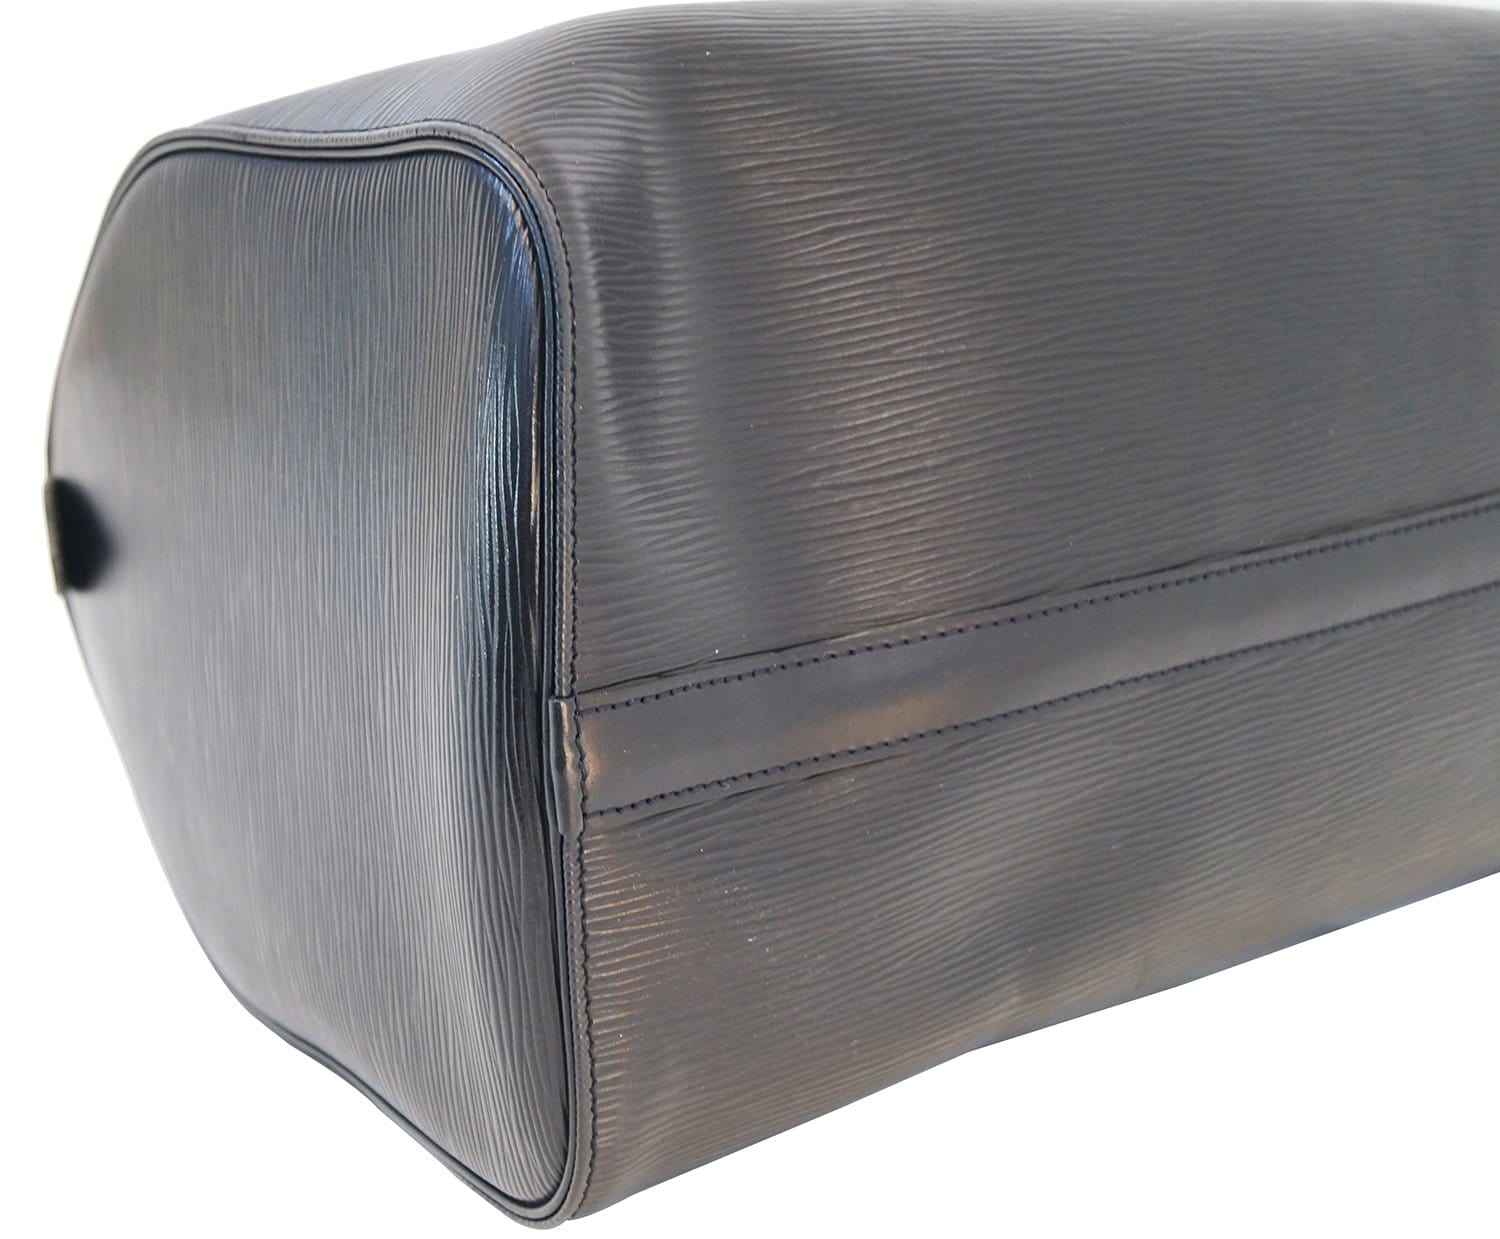 Louis Vuitton Speedy 35 Ecru Epi Leather Bag